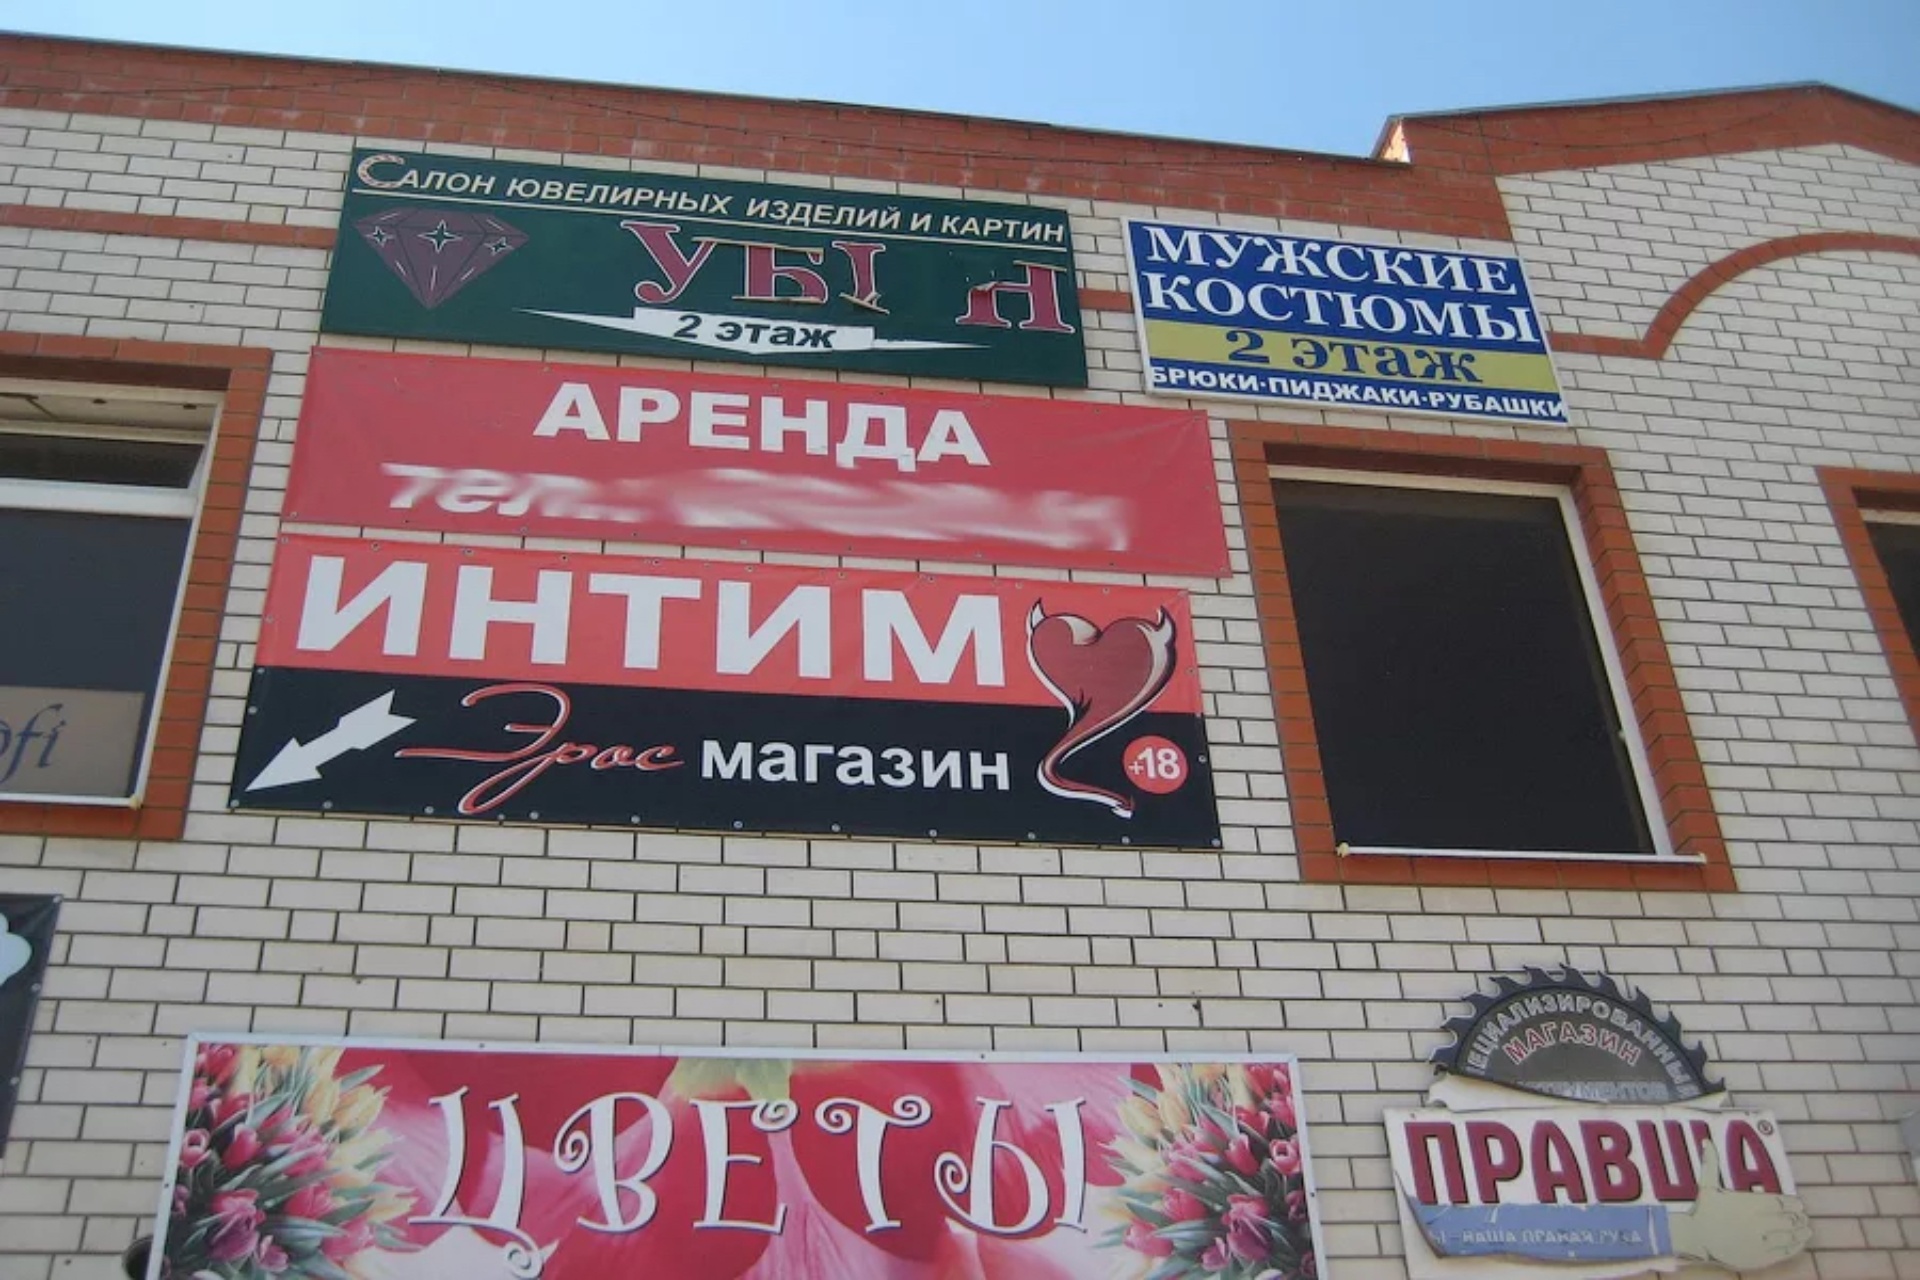 Интим-магазины в Северном Орехово-Борисово